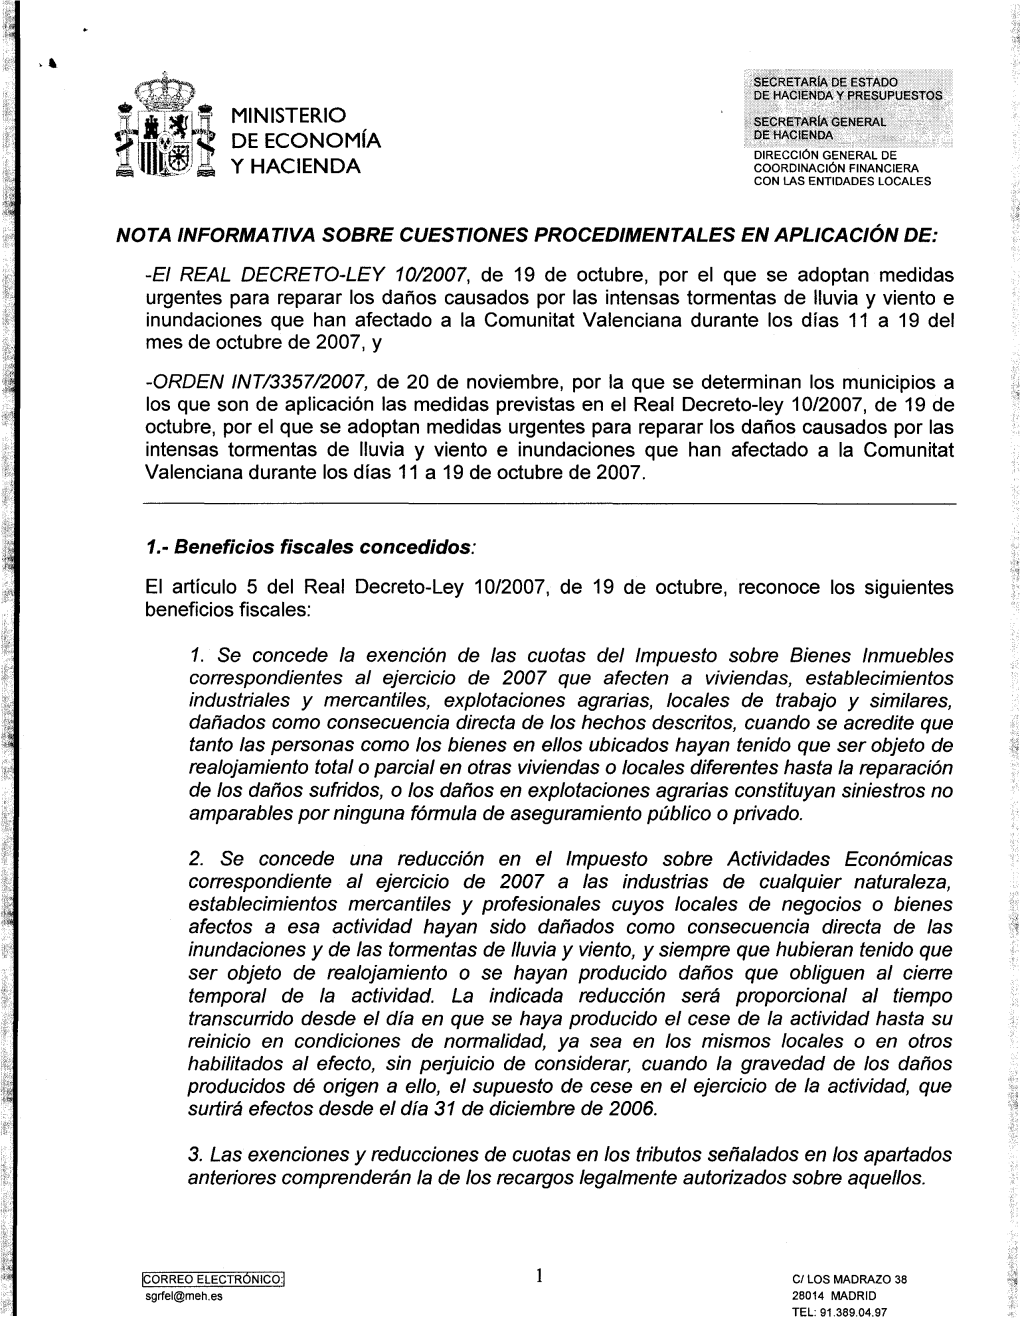 Nota Informativa Sobre Cuestiones Procedimentales En Aplicación Del RDL 10/2007 Sobre Medidas Urgentes Para Reparar